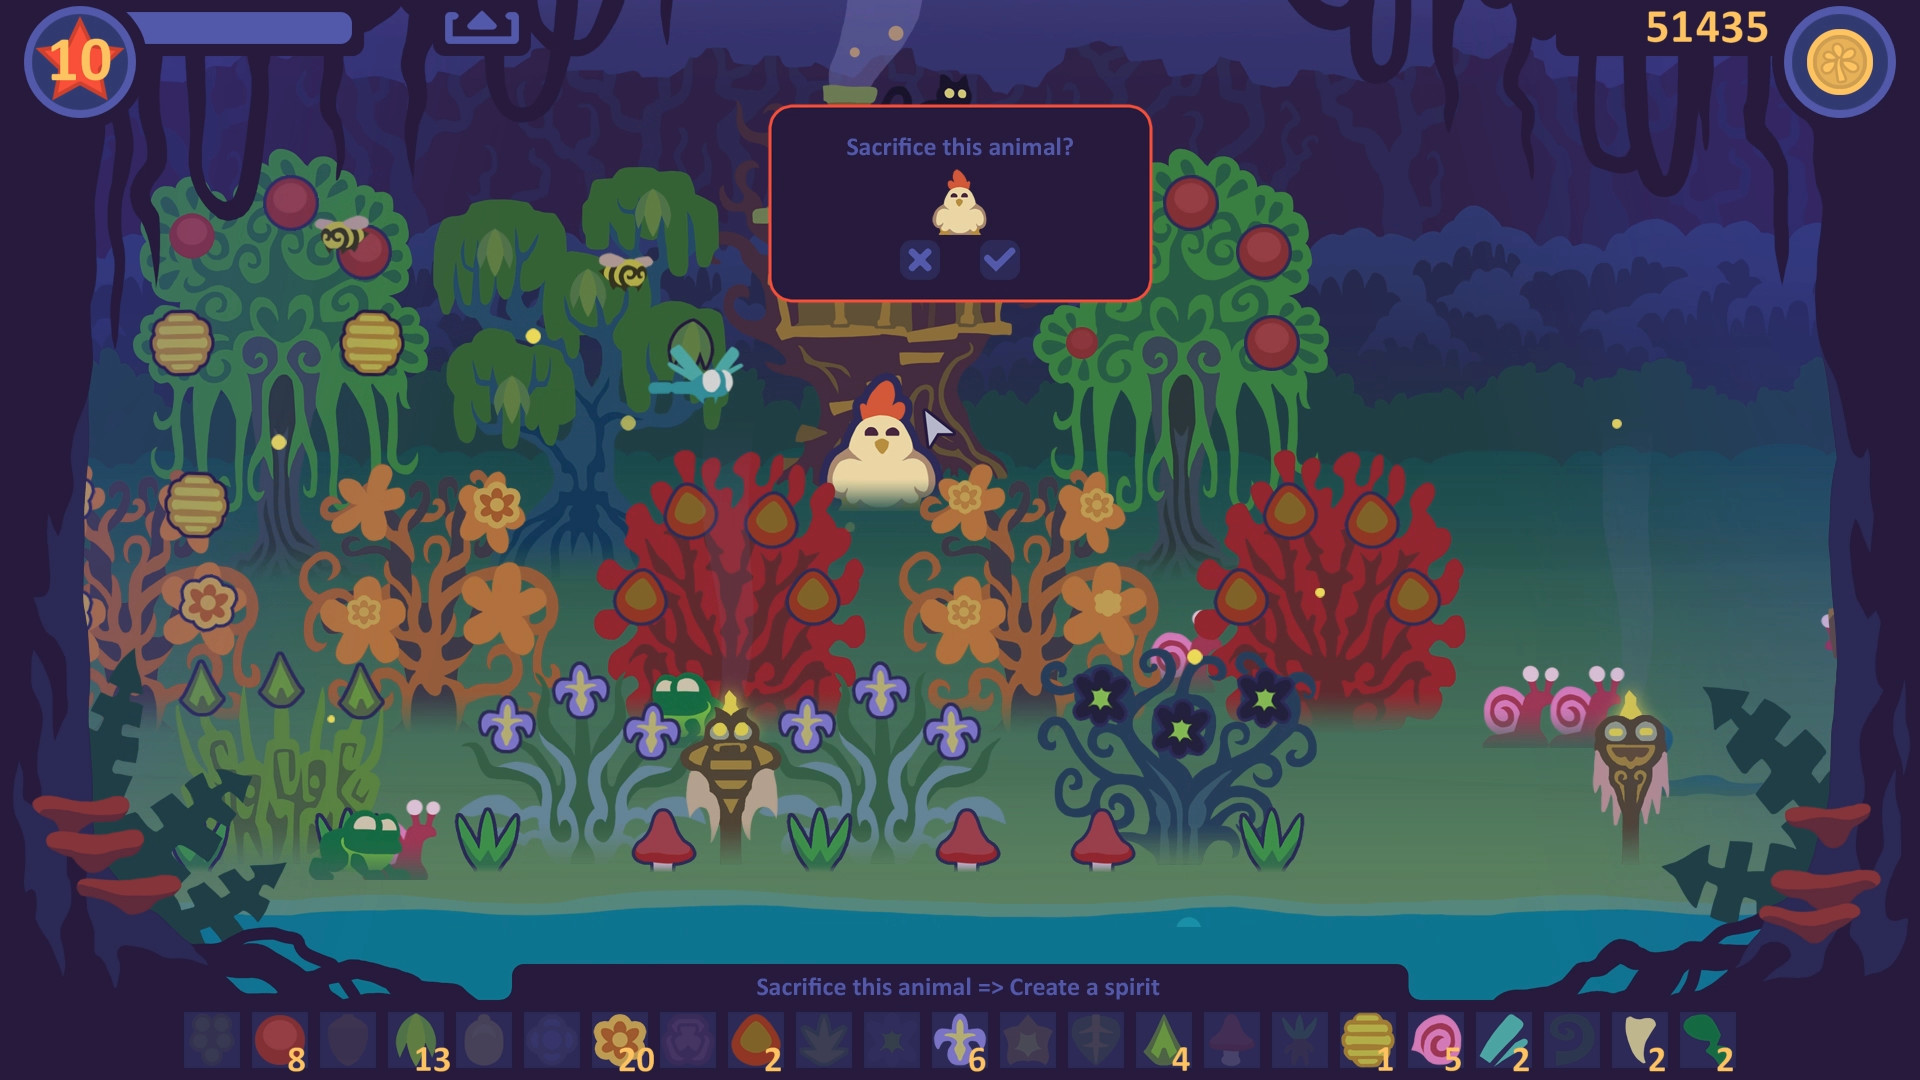 Garden In!, PC Linux Steam Game